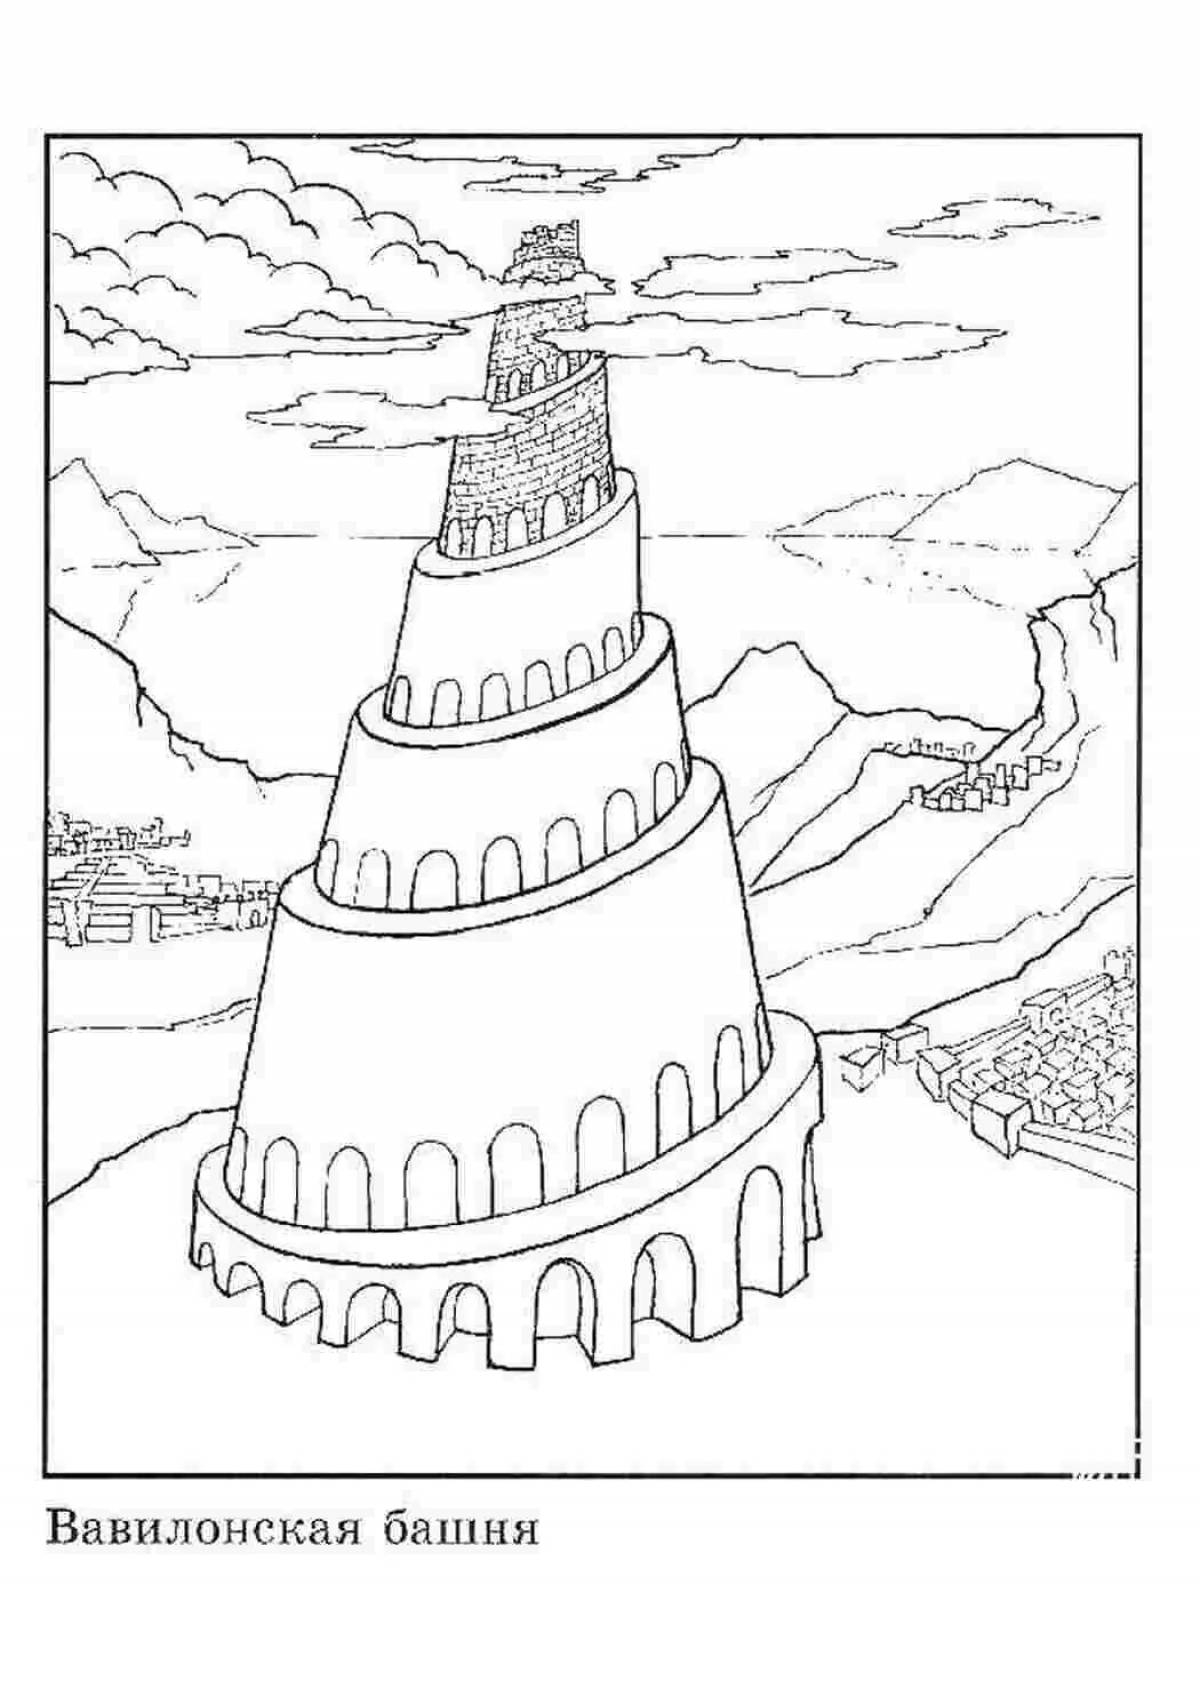 Иллюстрация вавилонской башни - 37 фото